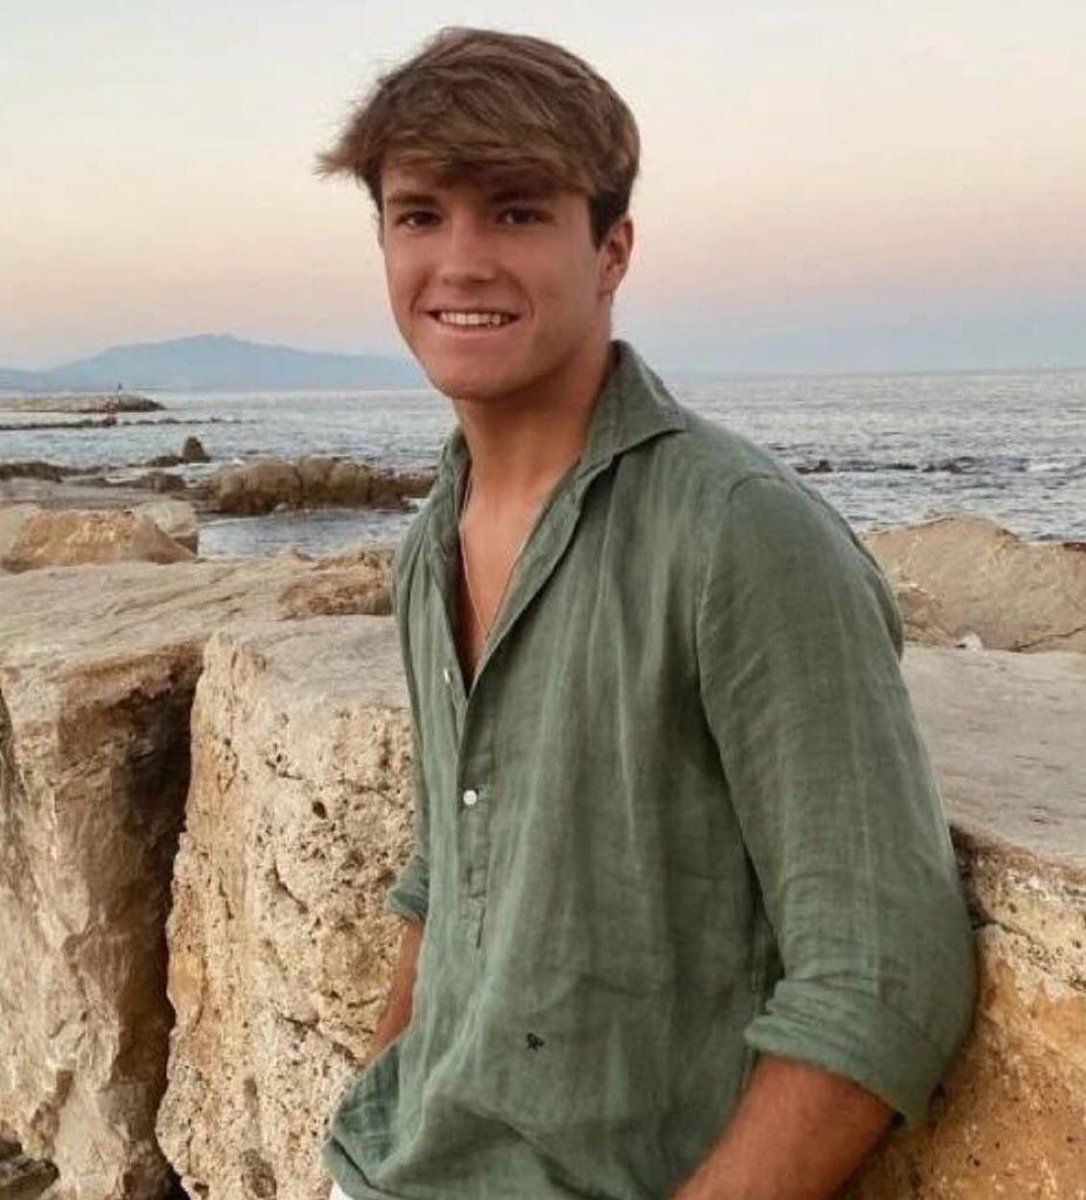 URGENTE
🚨 Álvaro Prieto, jugador del #JuvenilACCF, ha desaparecido esta mañana en Sevilla. 
La última vez que fue visto fue a las 09:30 h en la estación de Santa Justa. 
Vestía pantalón beige/ camisa verde.
Contactar con la policía o con la familia en el 608435399📞

🙏🏽 Gracias